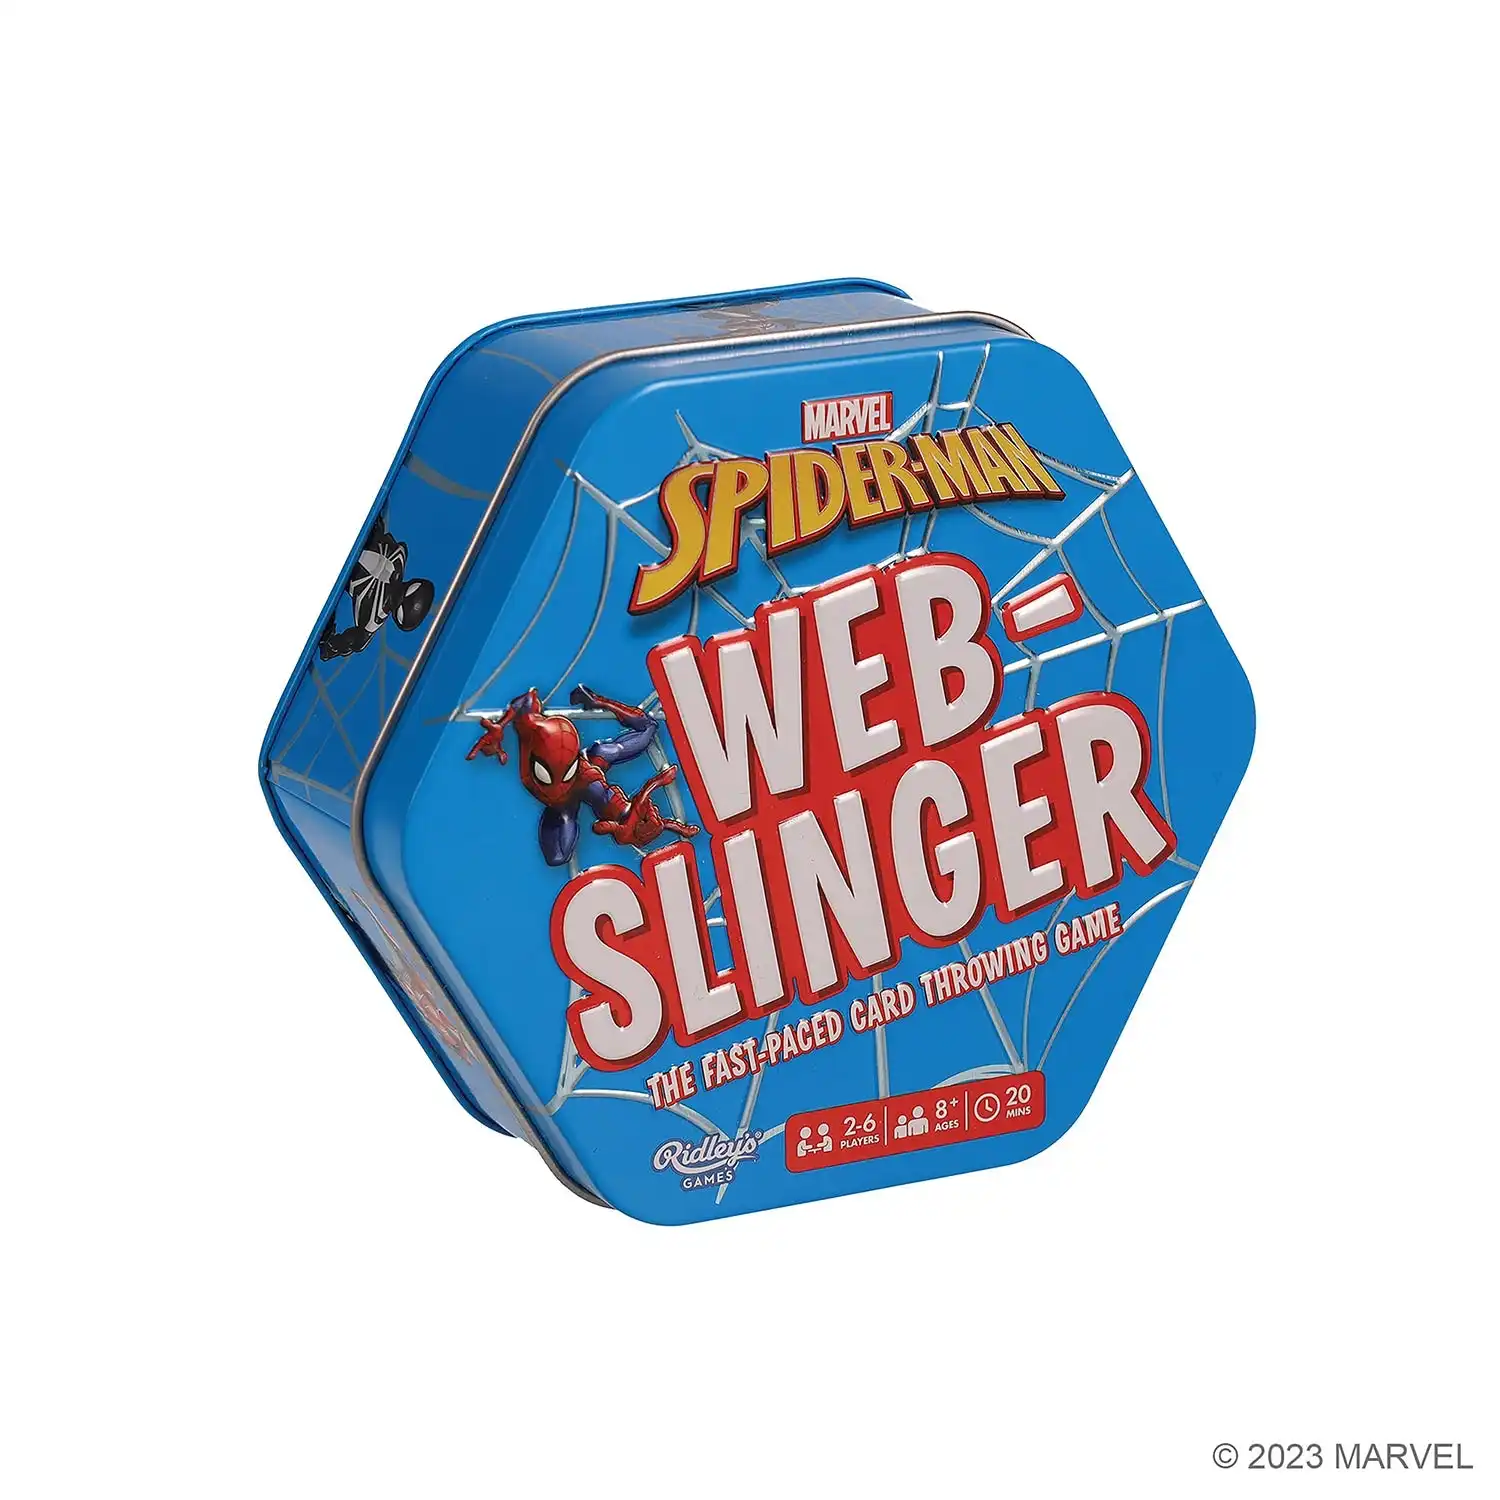 Disney Marvel Spider-Man Web-Slinger Game